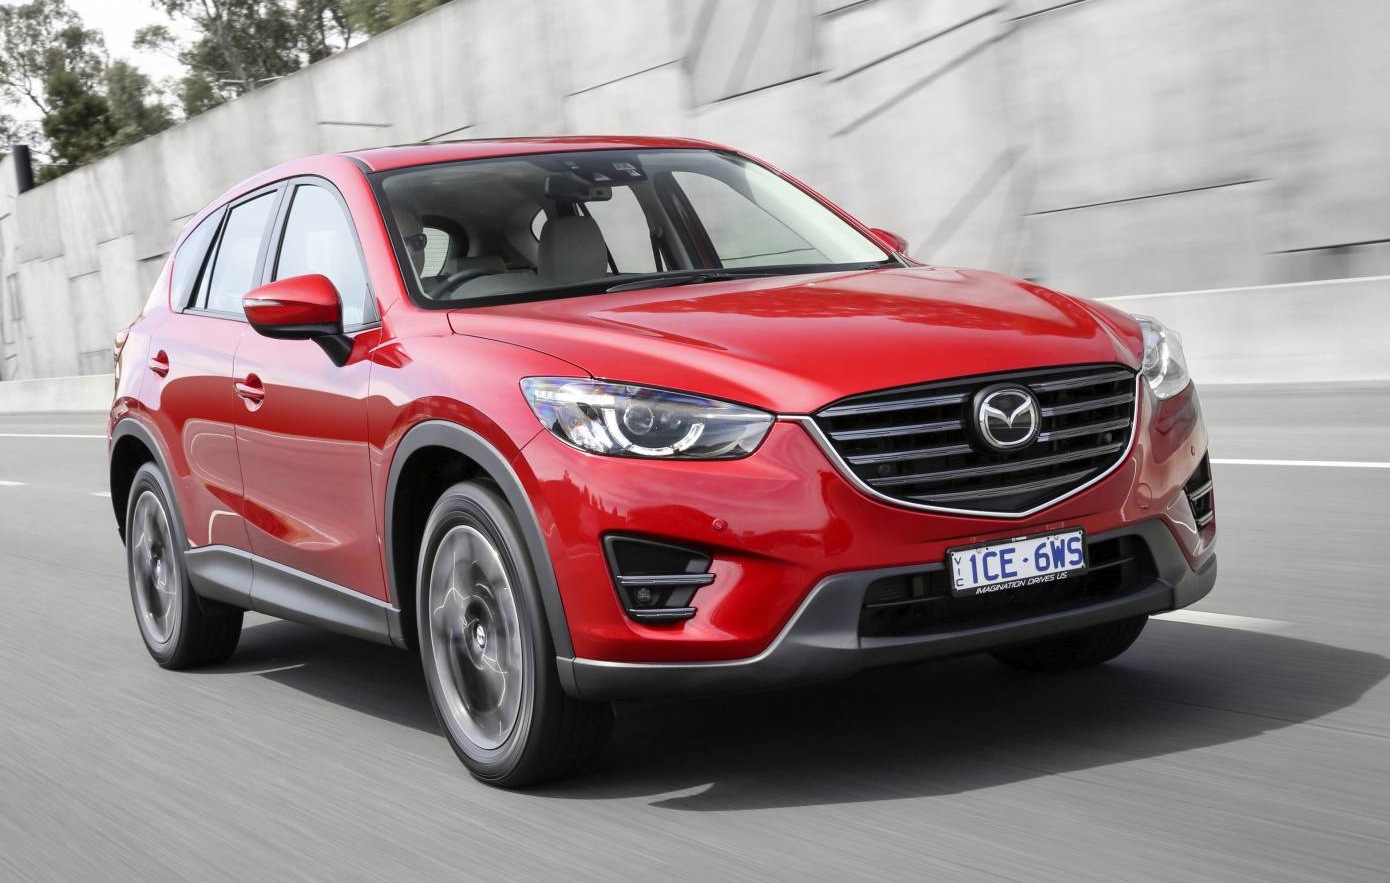 2015 Mazda Cx 5 On Sale In Australia From 27 190